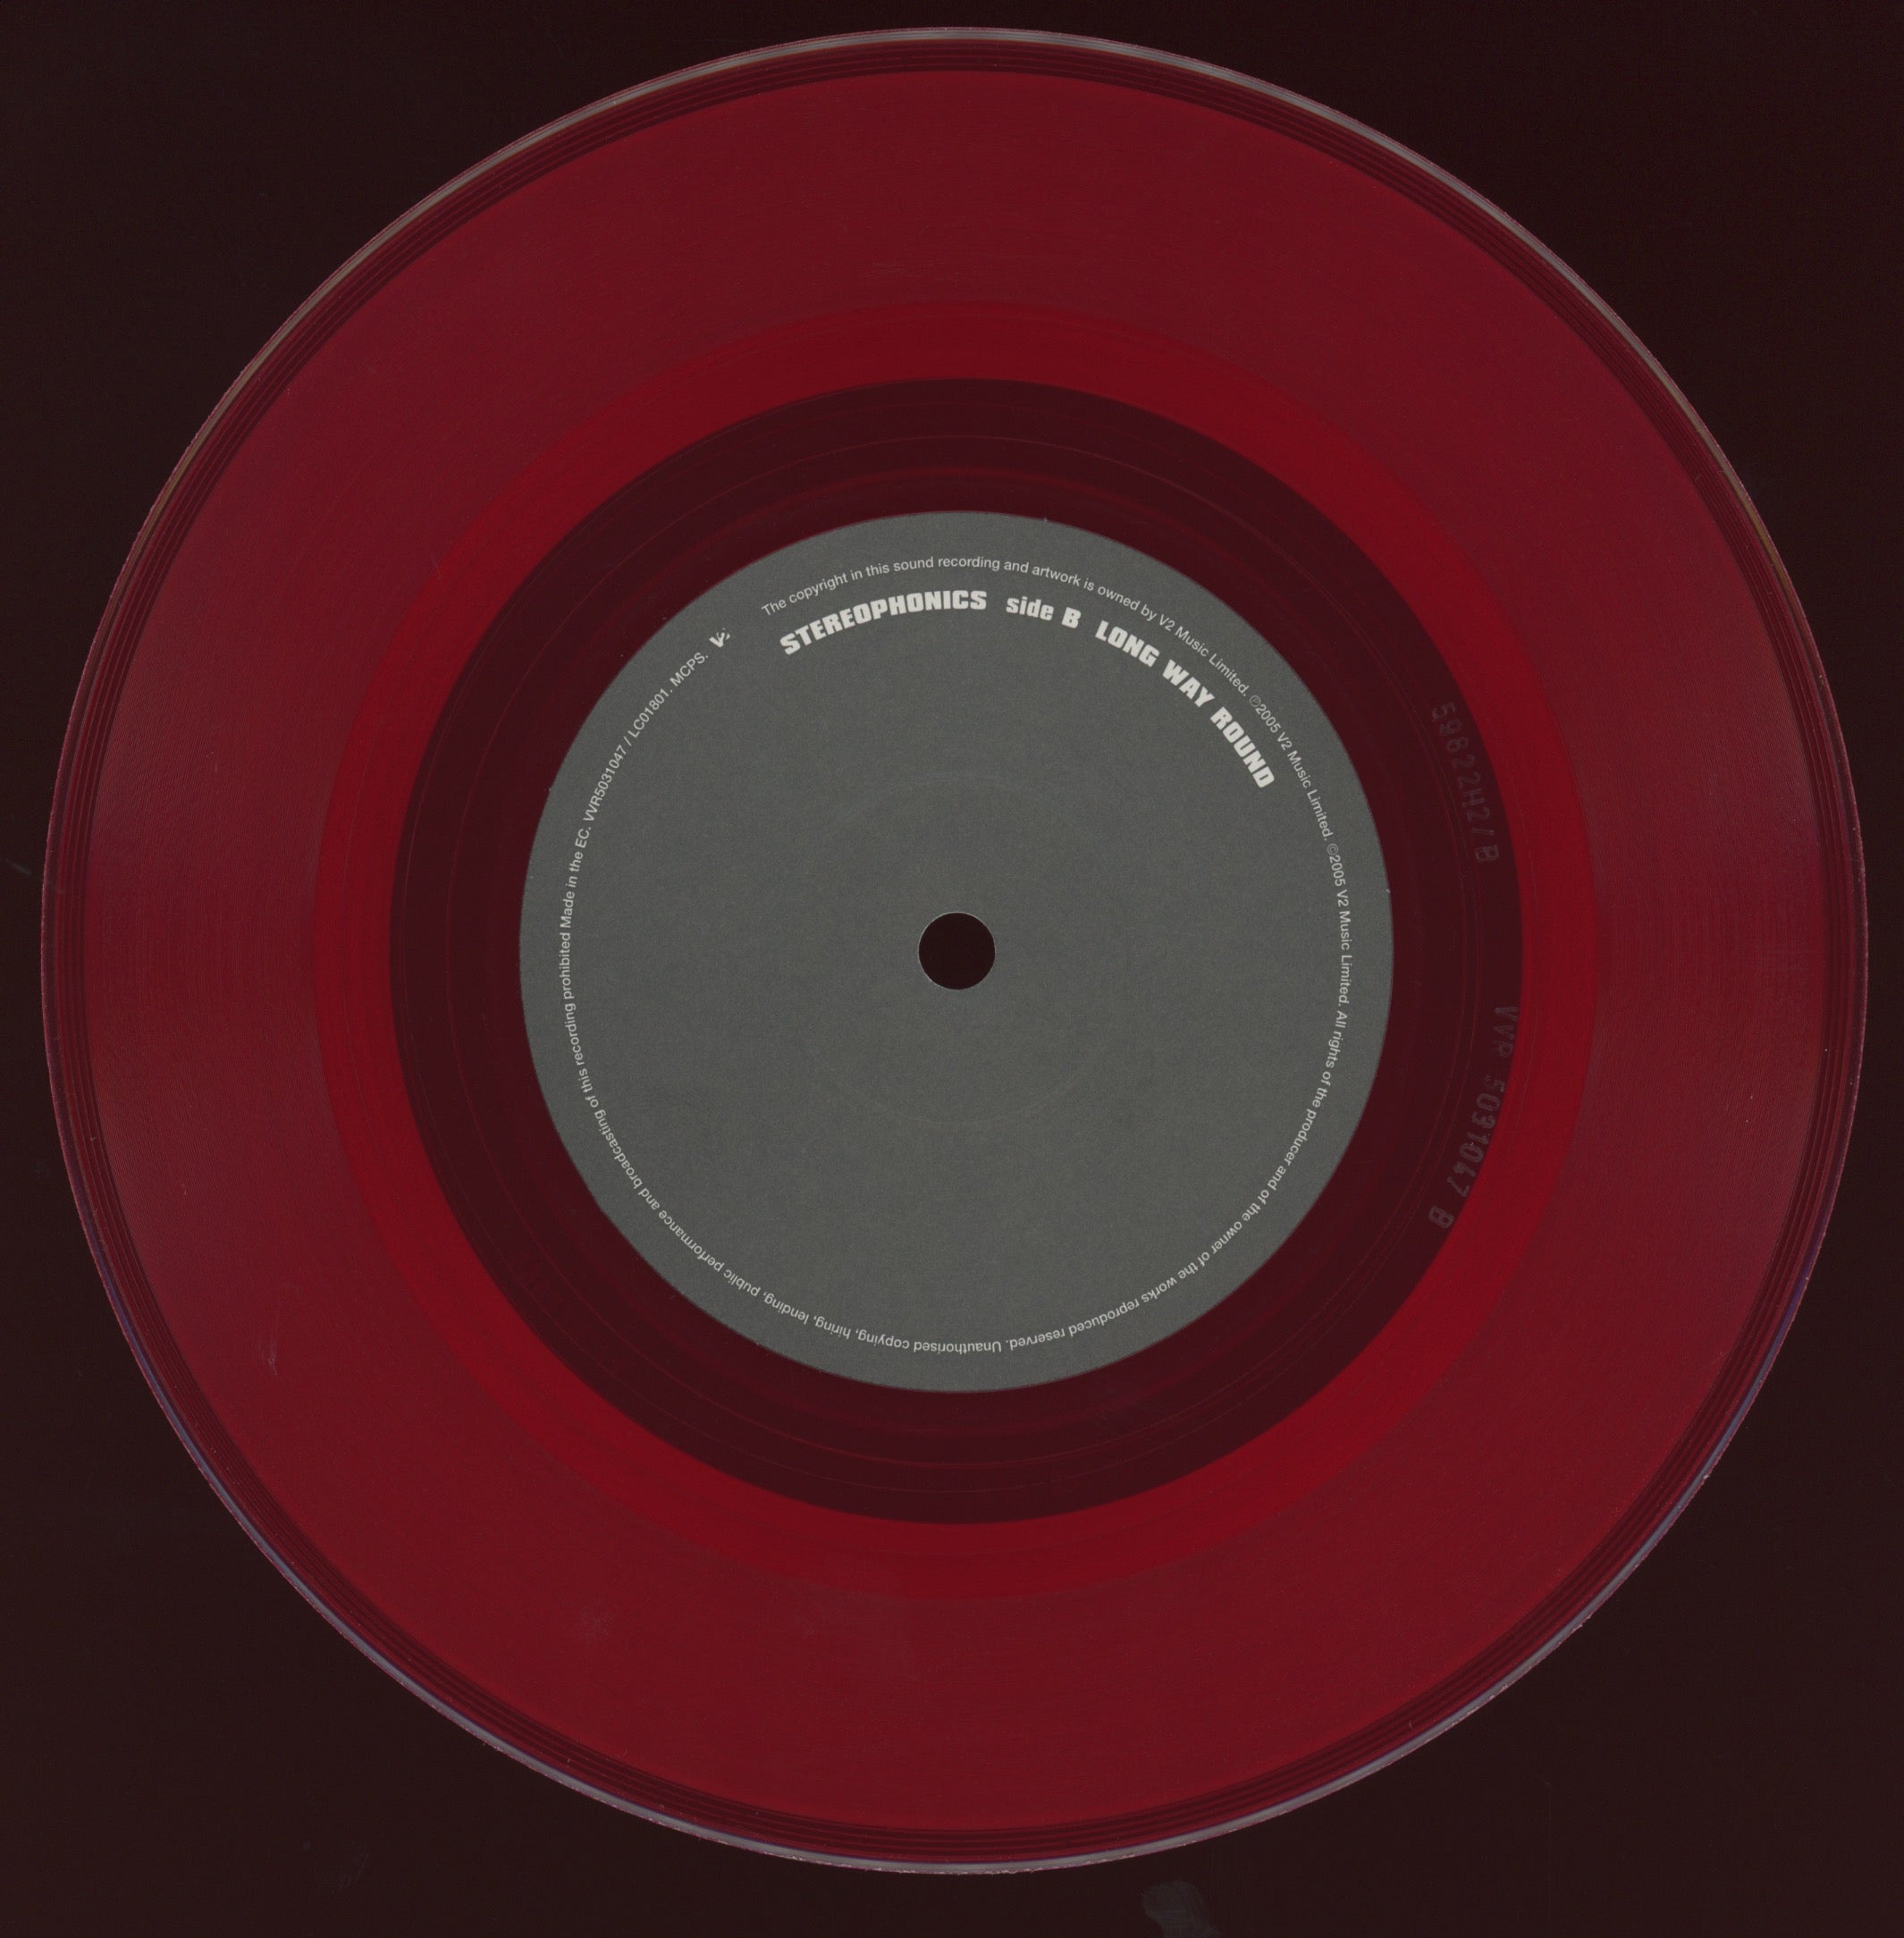 Stereophonics - Dakota on V2 Red Vinyl